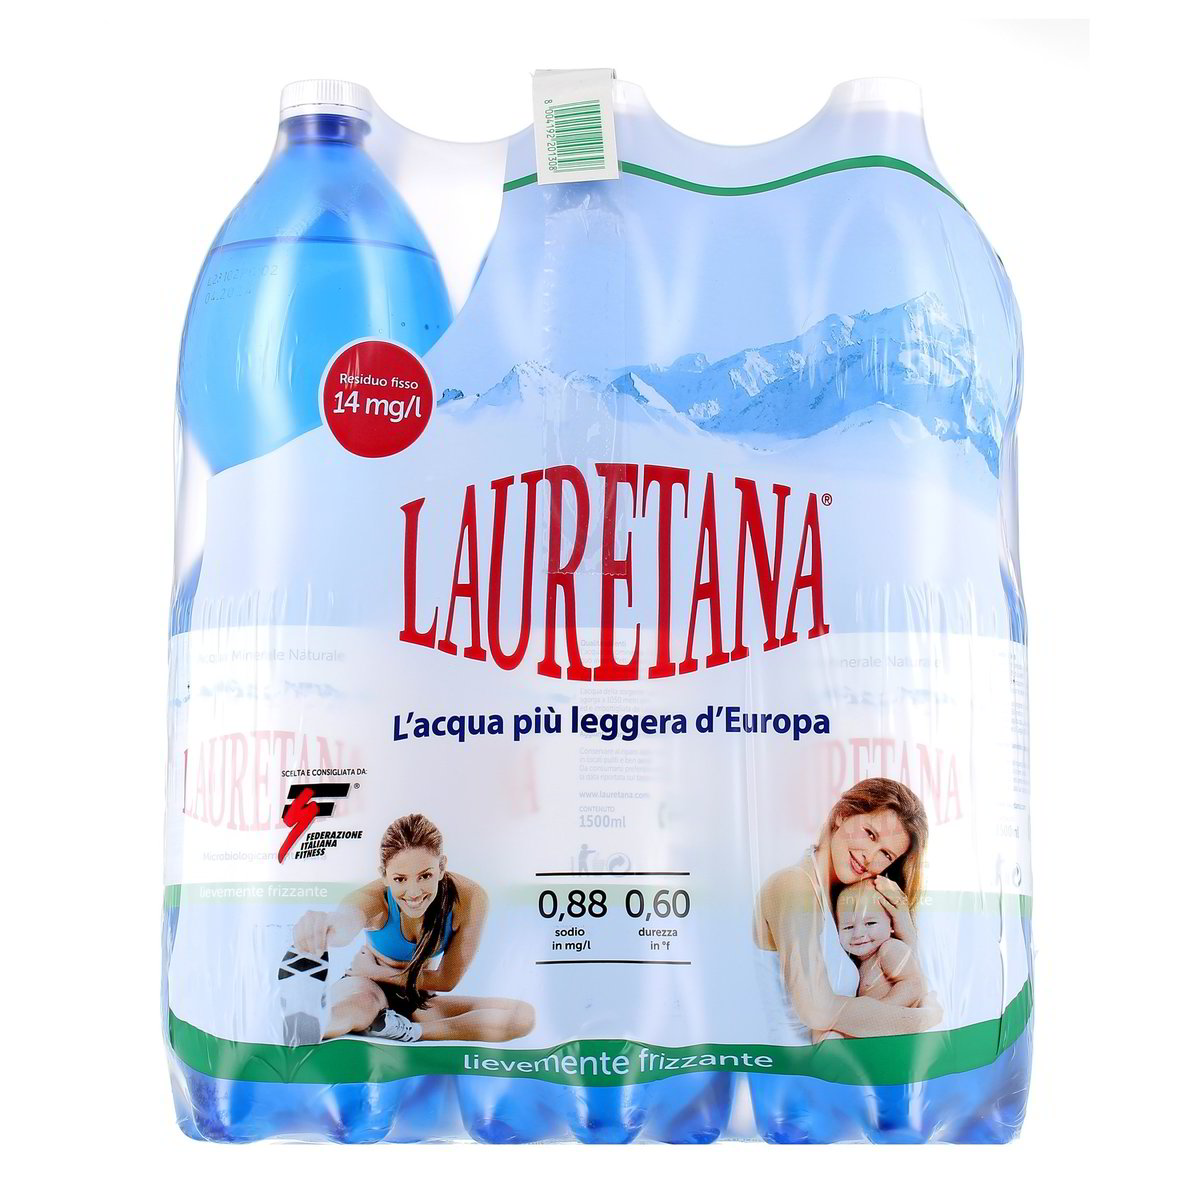 ACQUA LIEVEMENTE FRIZZANTE LAURETANA 6 bottiglie GRANDI da 1,5 l in  dettaglio